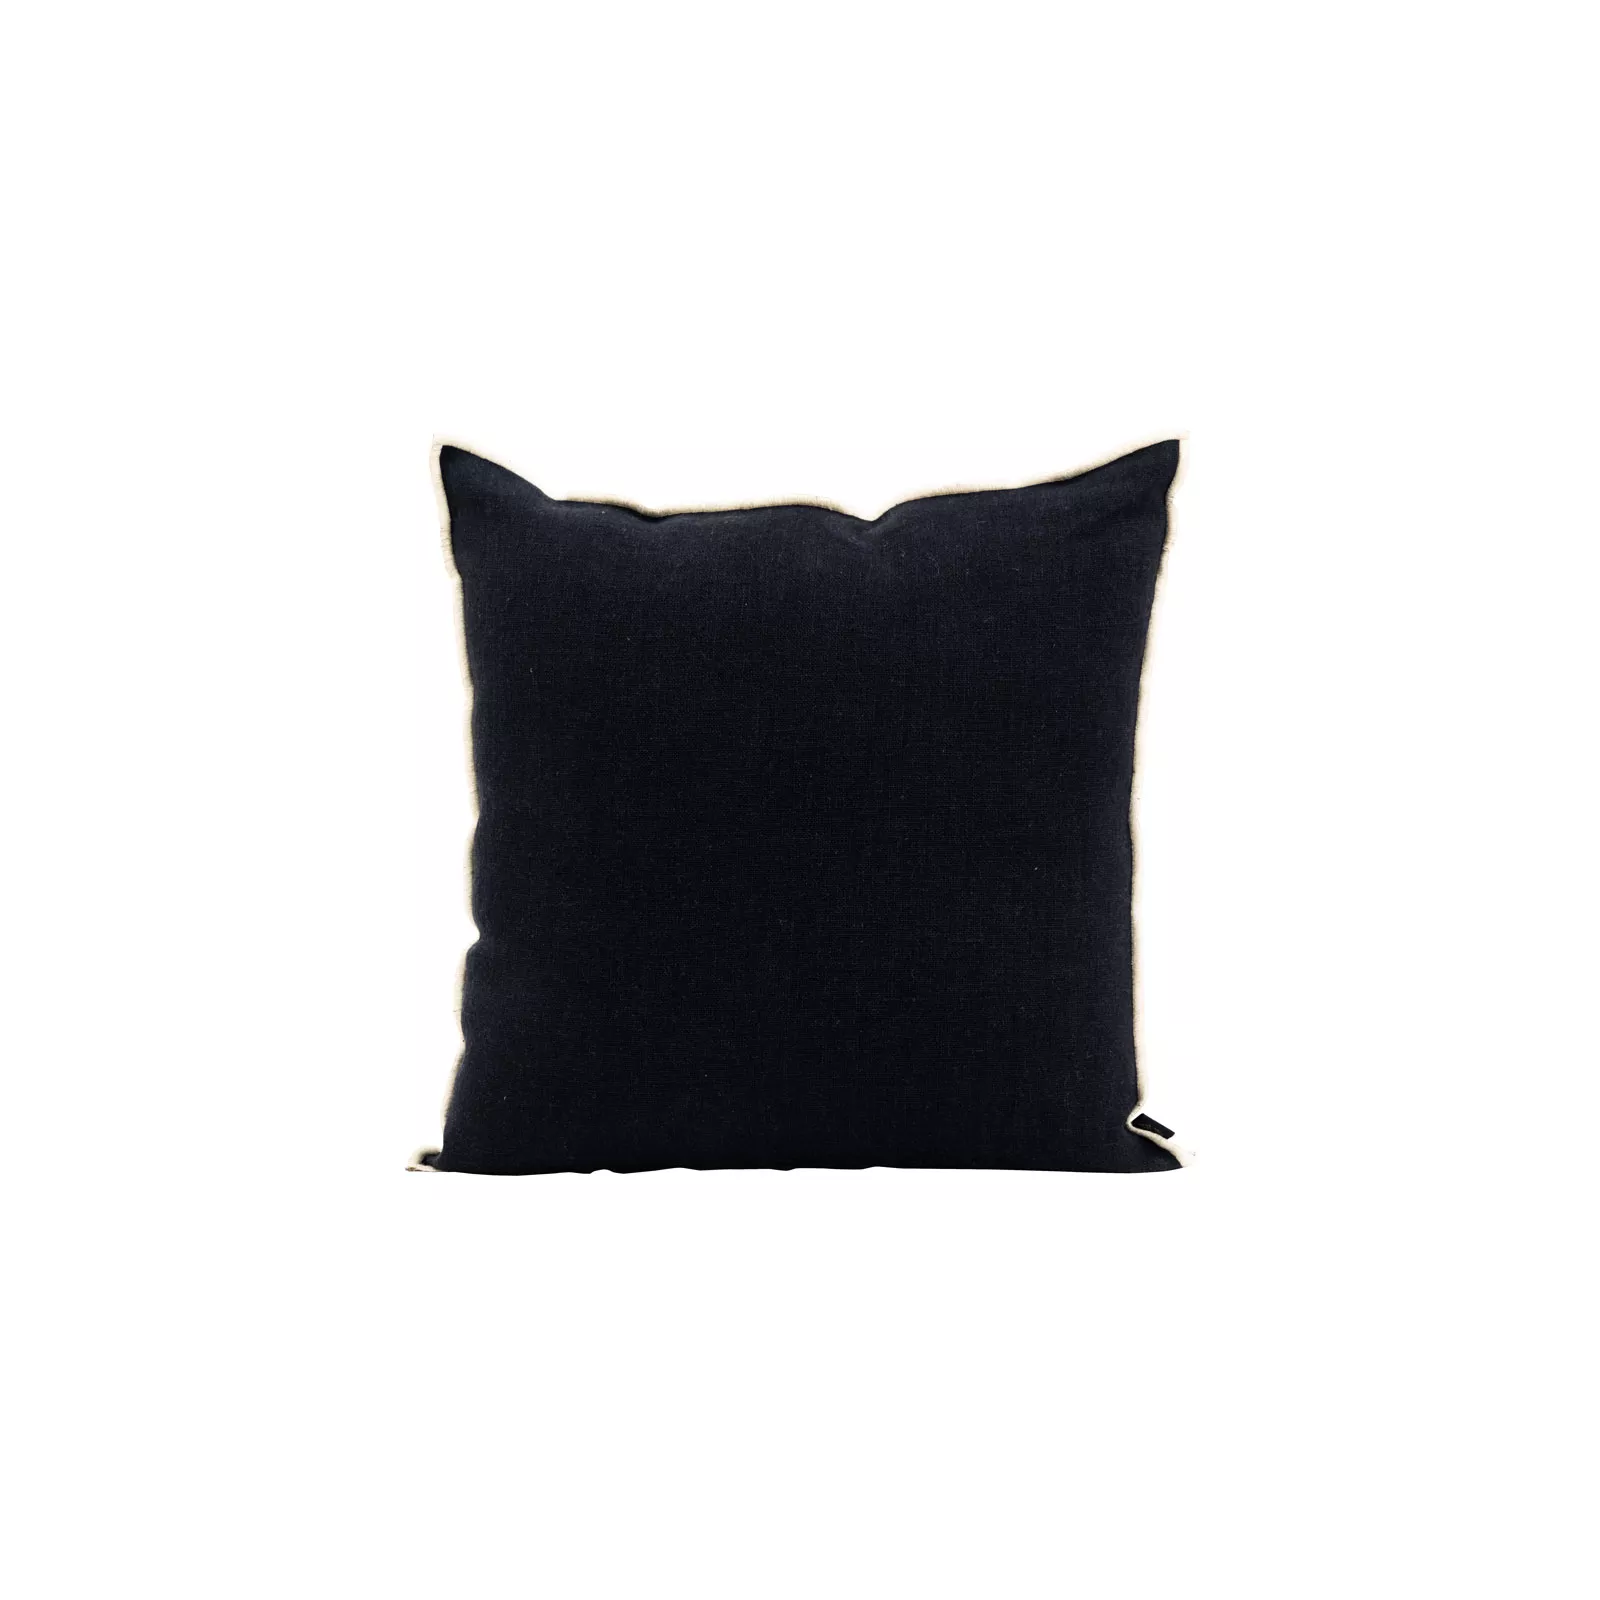 HOUSSE DE COUSSIN CHENNAI Color-BLACK Dimension-18X18 Composition-LIN - BLACK